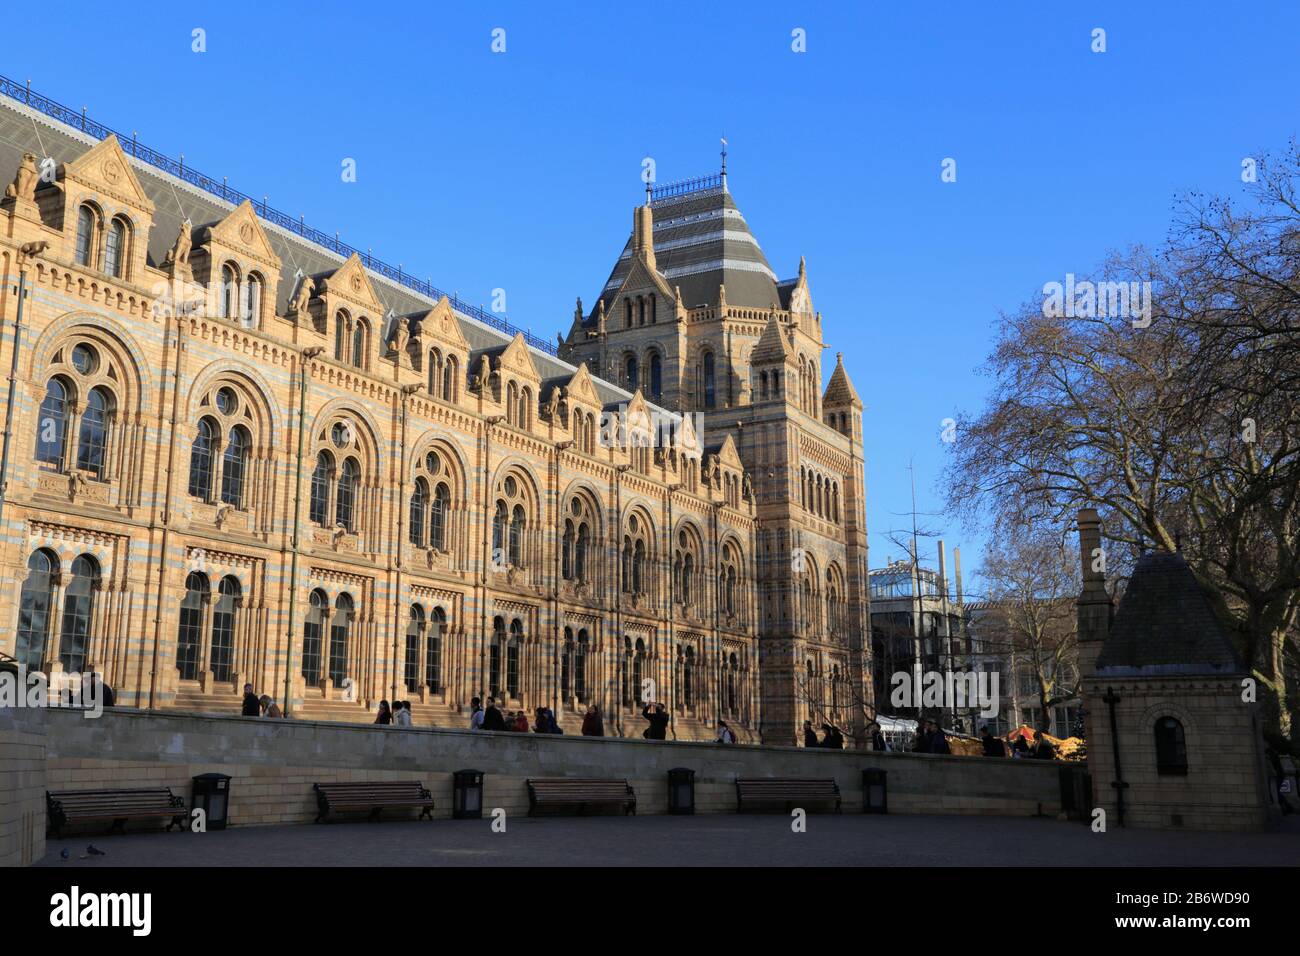 Les gens marchent vers l'entrée du Natural History Museum qui a été construit en terre cuite et ressemble à une cathédrale, à Kensington, Londres, Royaume-Uni. Banque D'Images